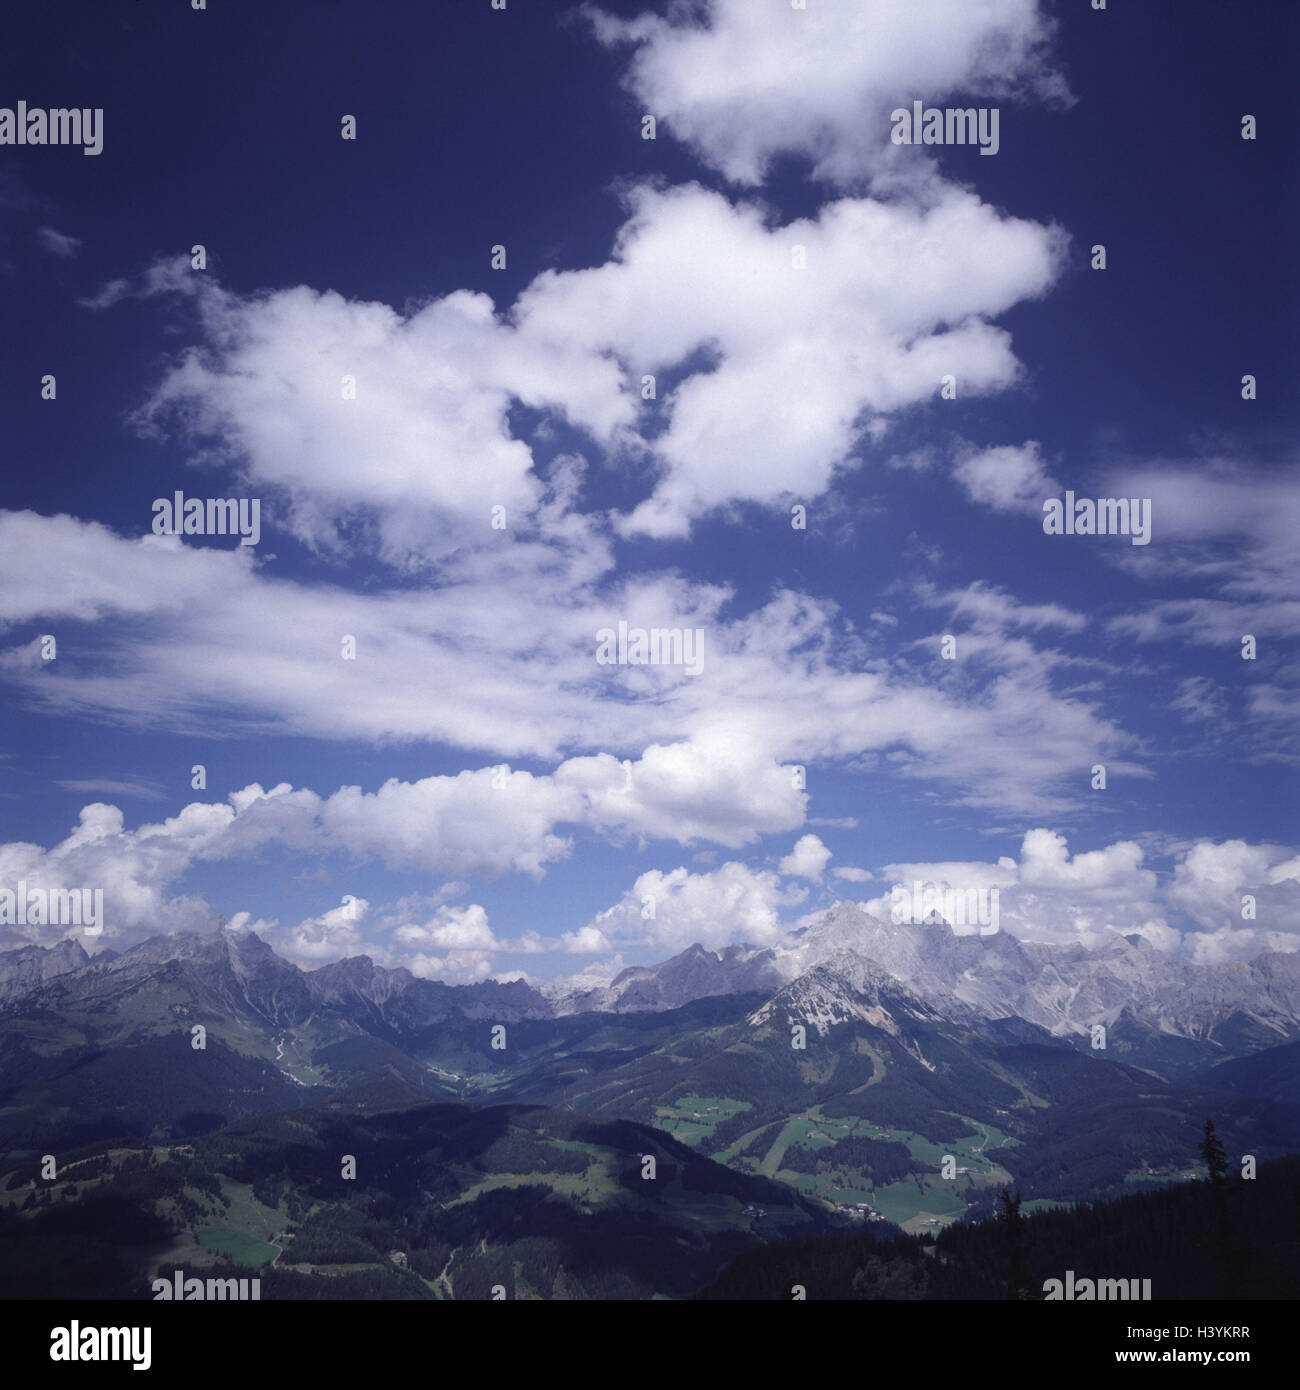 Austria Salzburg Pongau, radian town, cavallo di fuoco, 1768 m, vista Dachsteingebirge, Europa, abitante del paese di Salisburgo, il paesaggio di montagna, montagne, tetto in pietra, calce settentrionale delle Alpi, alpi, bellissimo nuvole, cielo molto nuvoloso Foto Stock